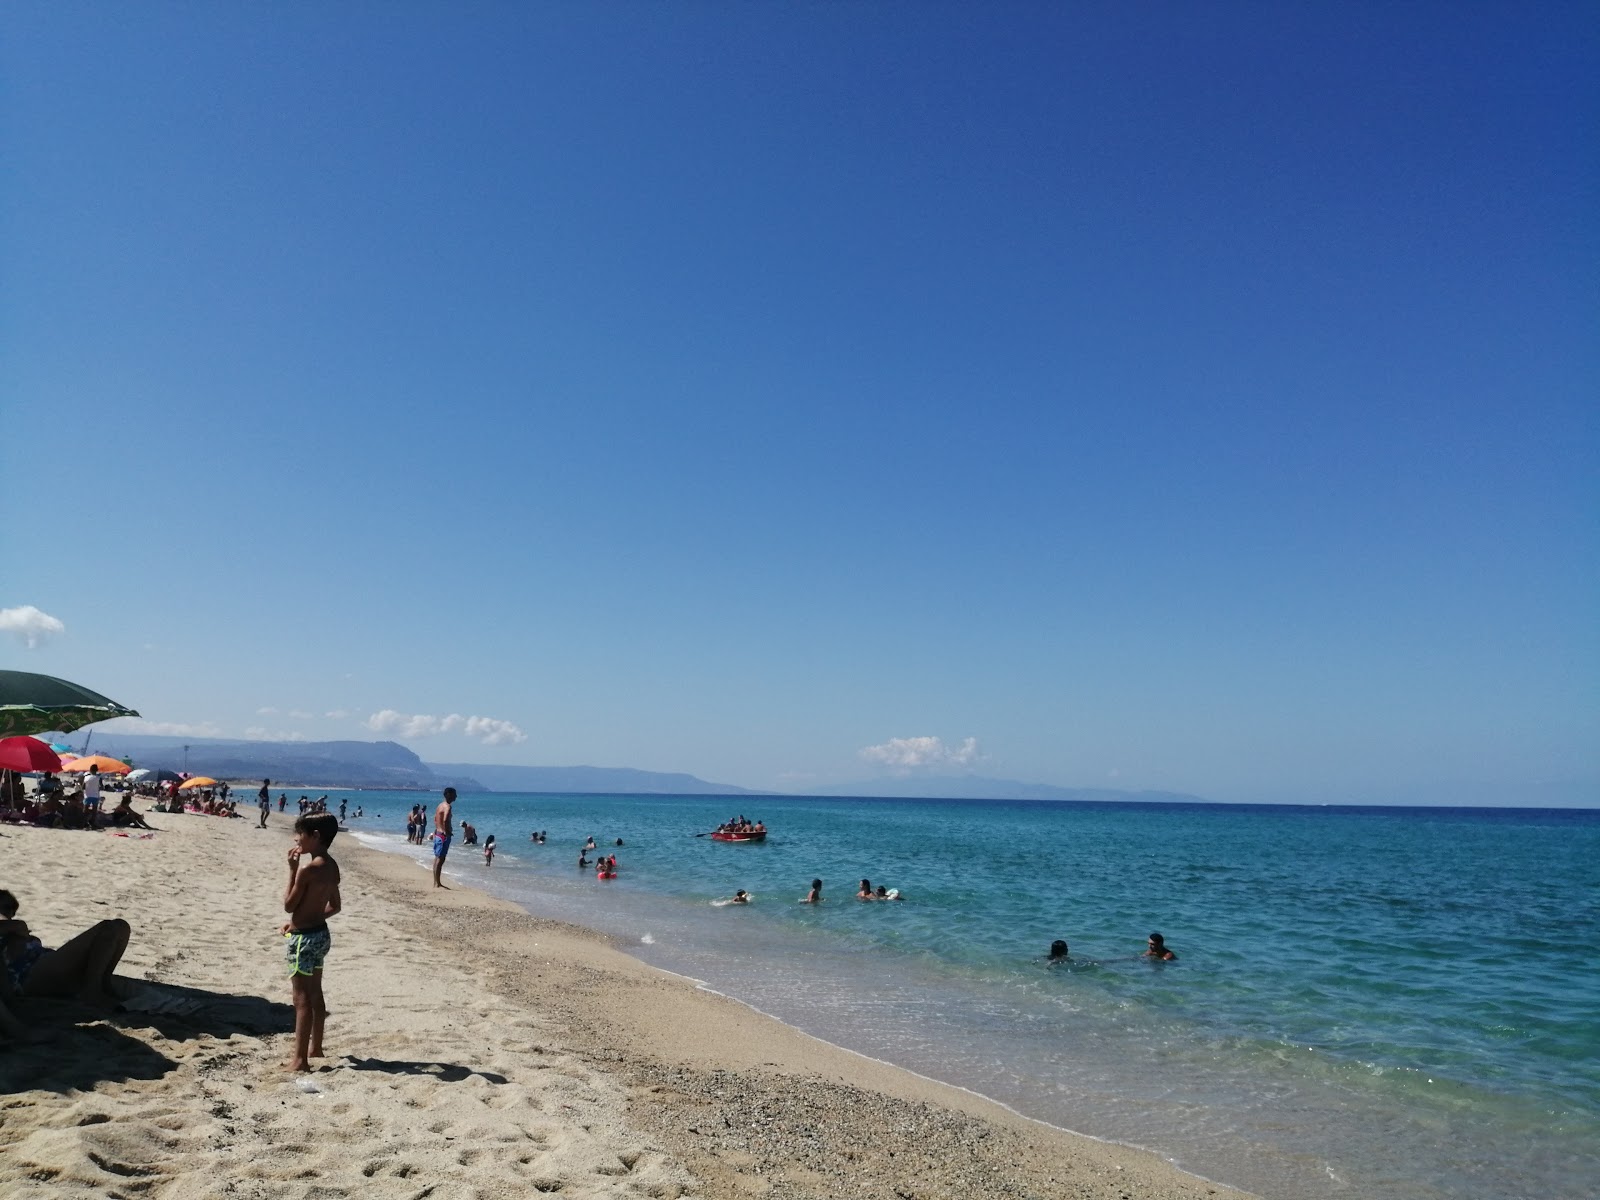 Spiaggia San Ferdinando'in fotoğrafı parlak ince kum yüzey ile